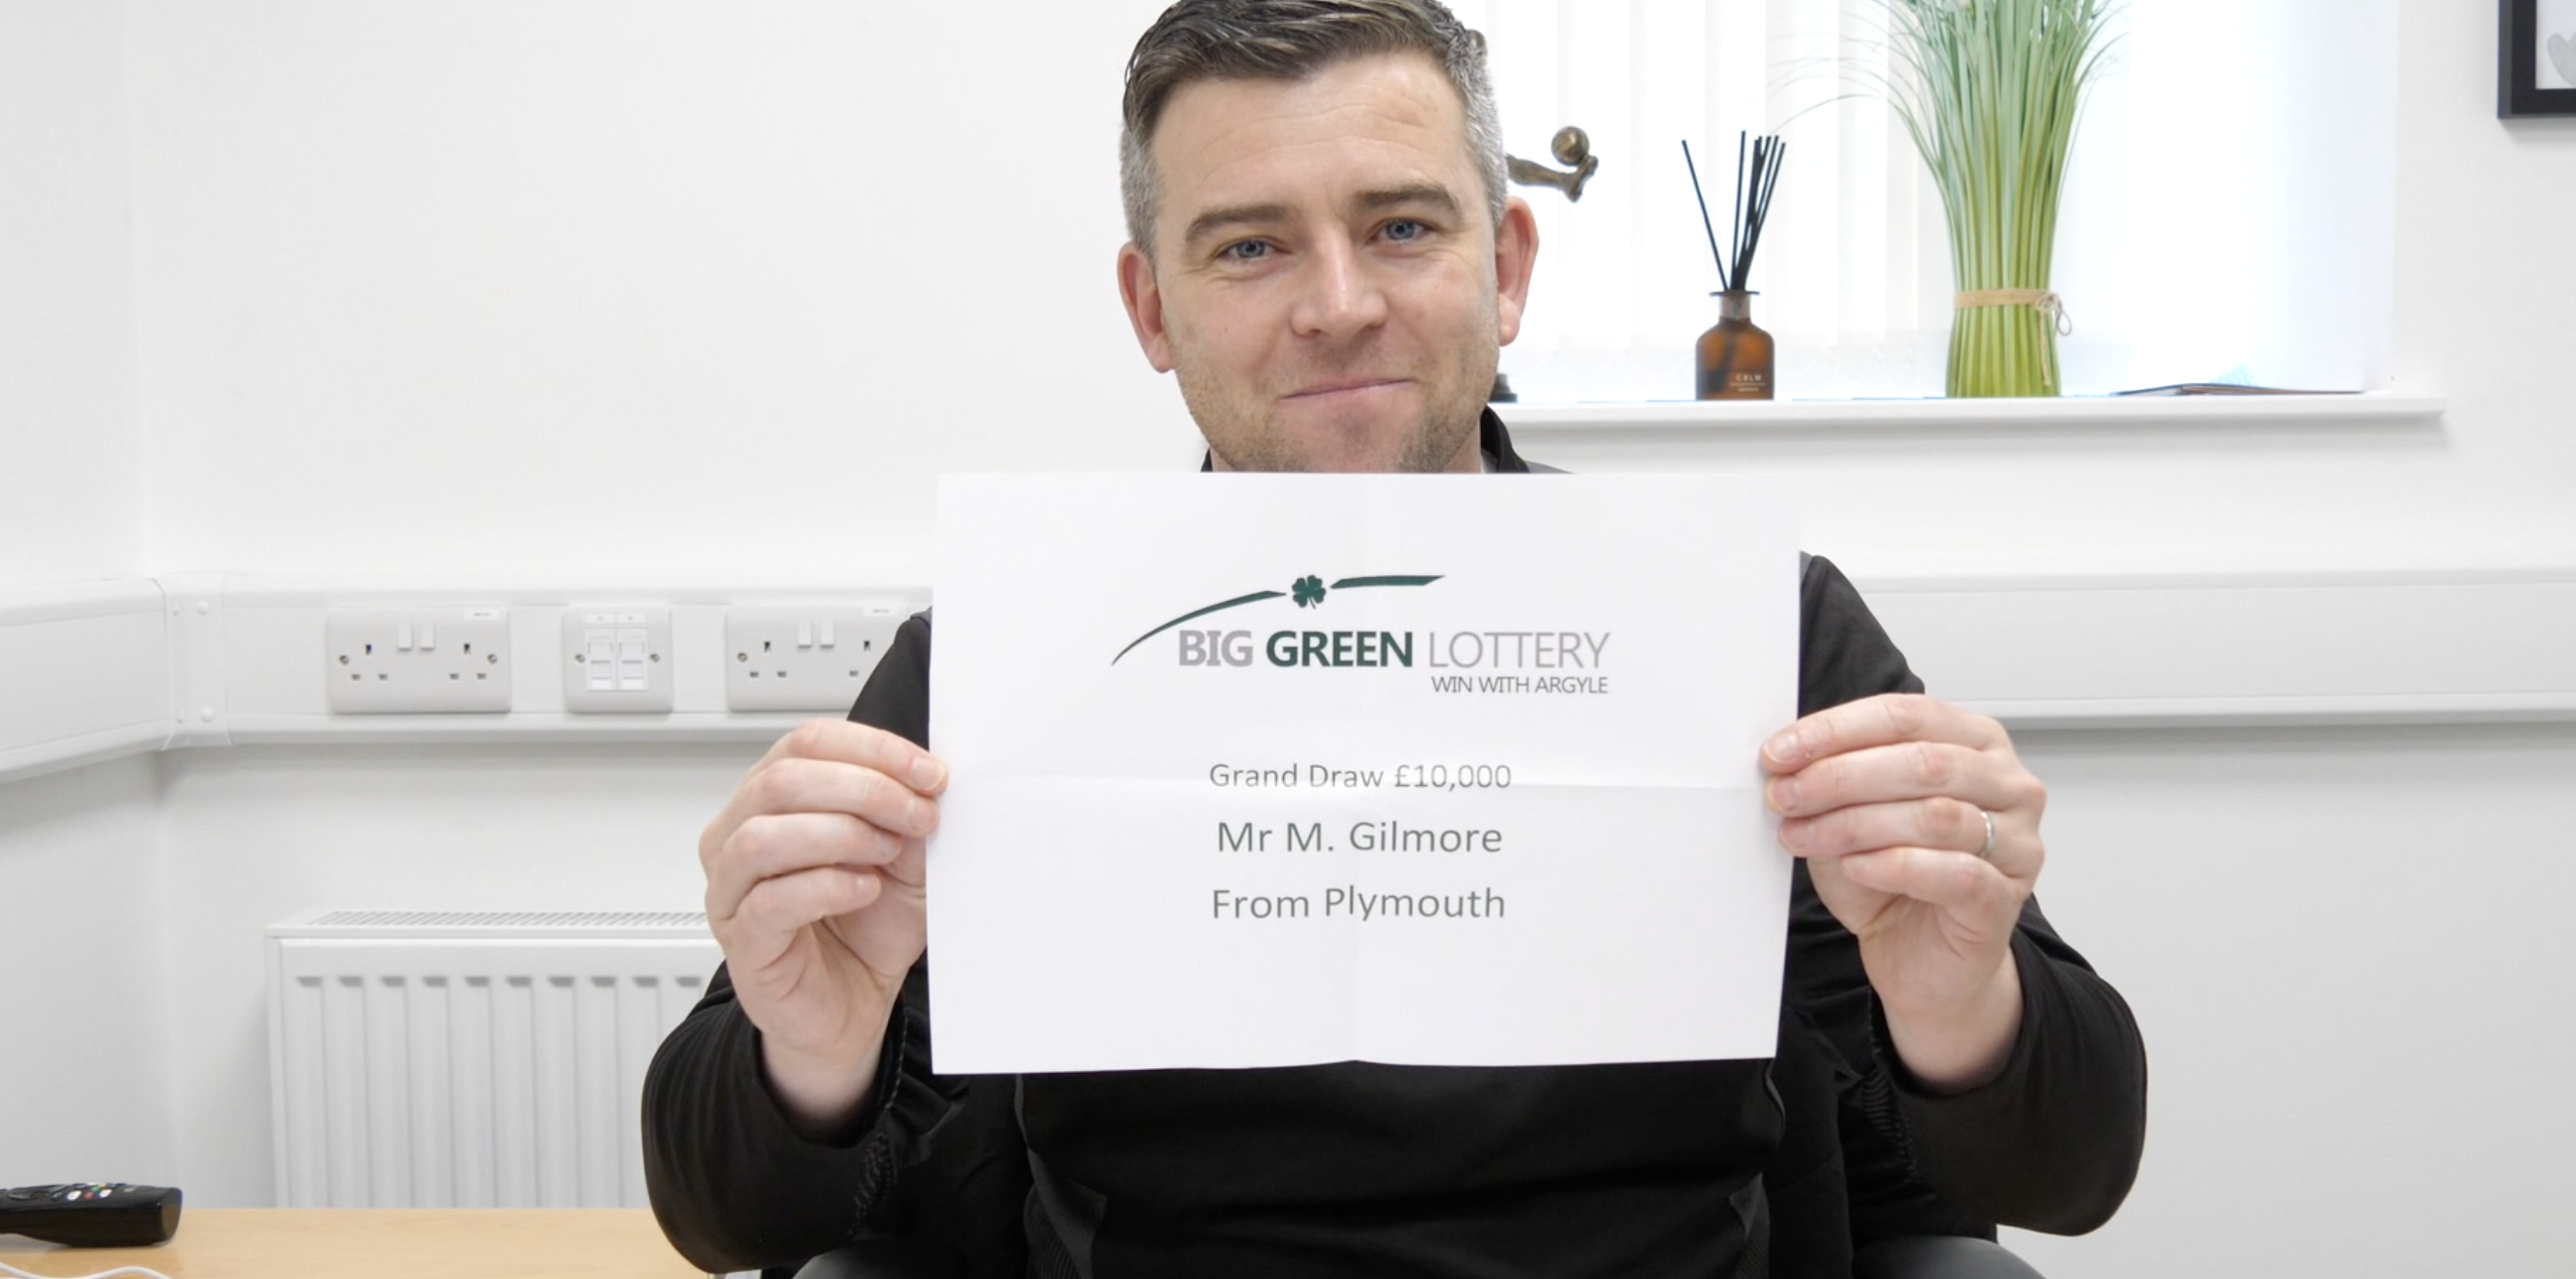 Steven Schumacher reveals Big Green Lottery winner